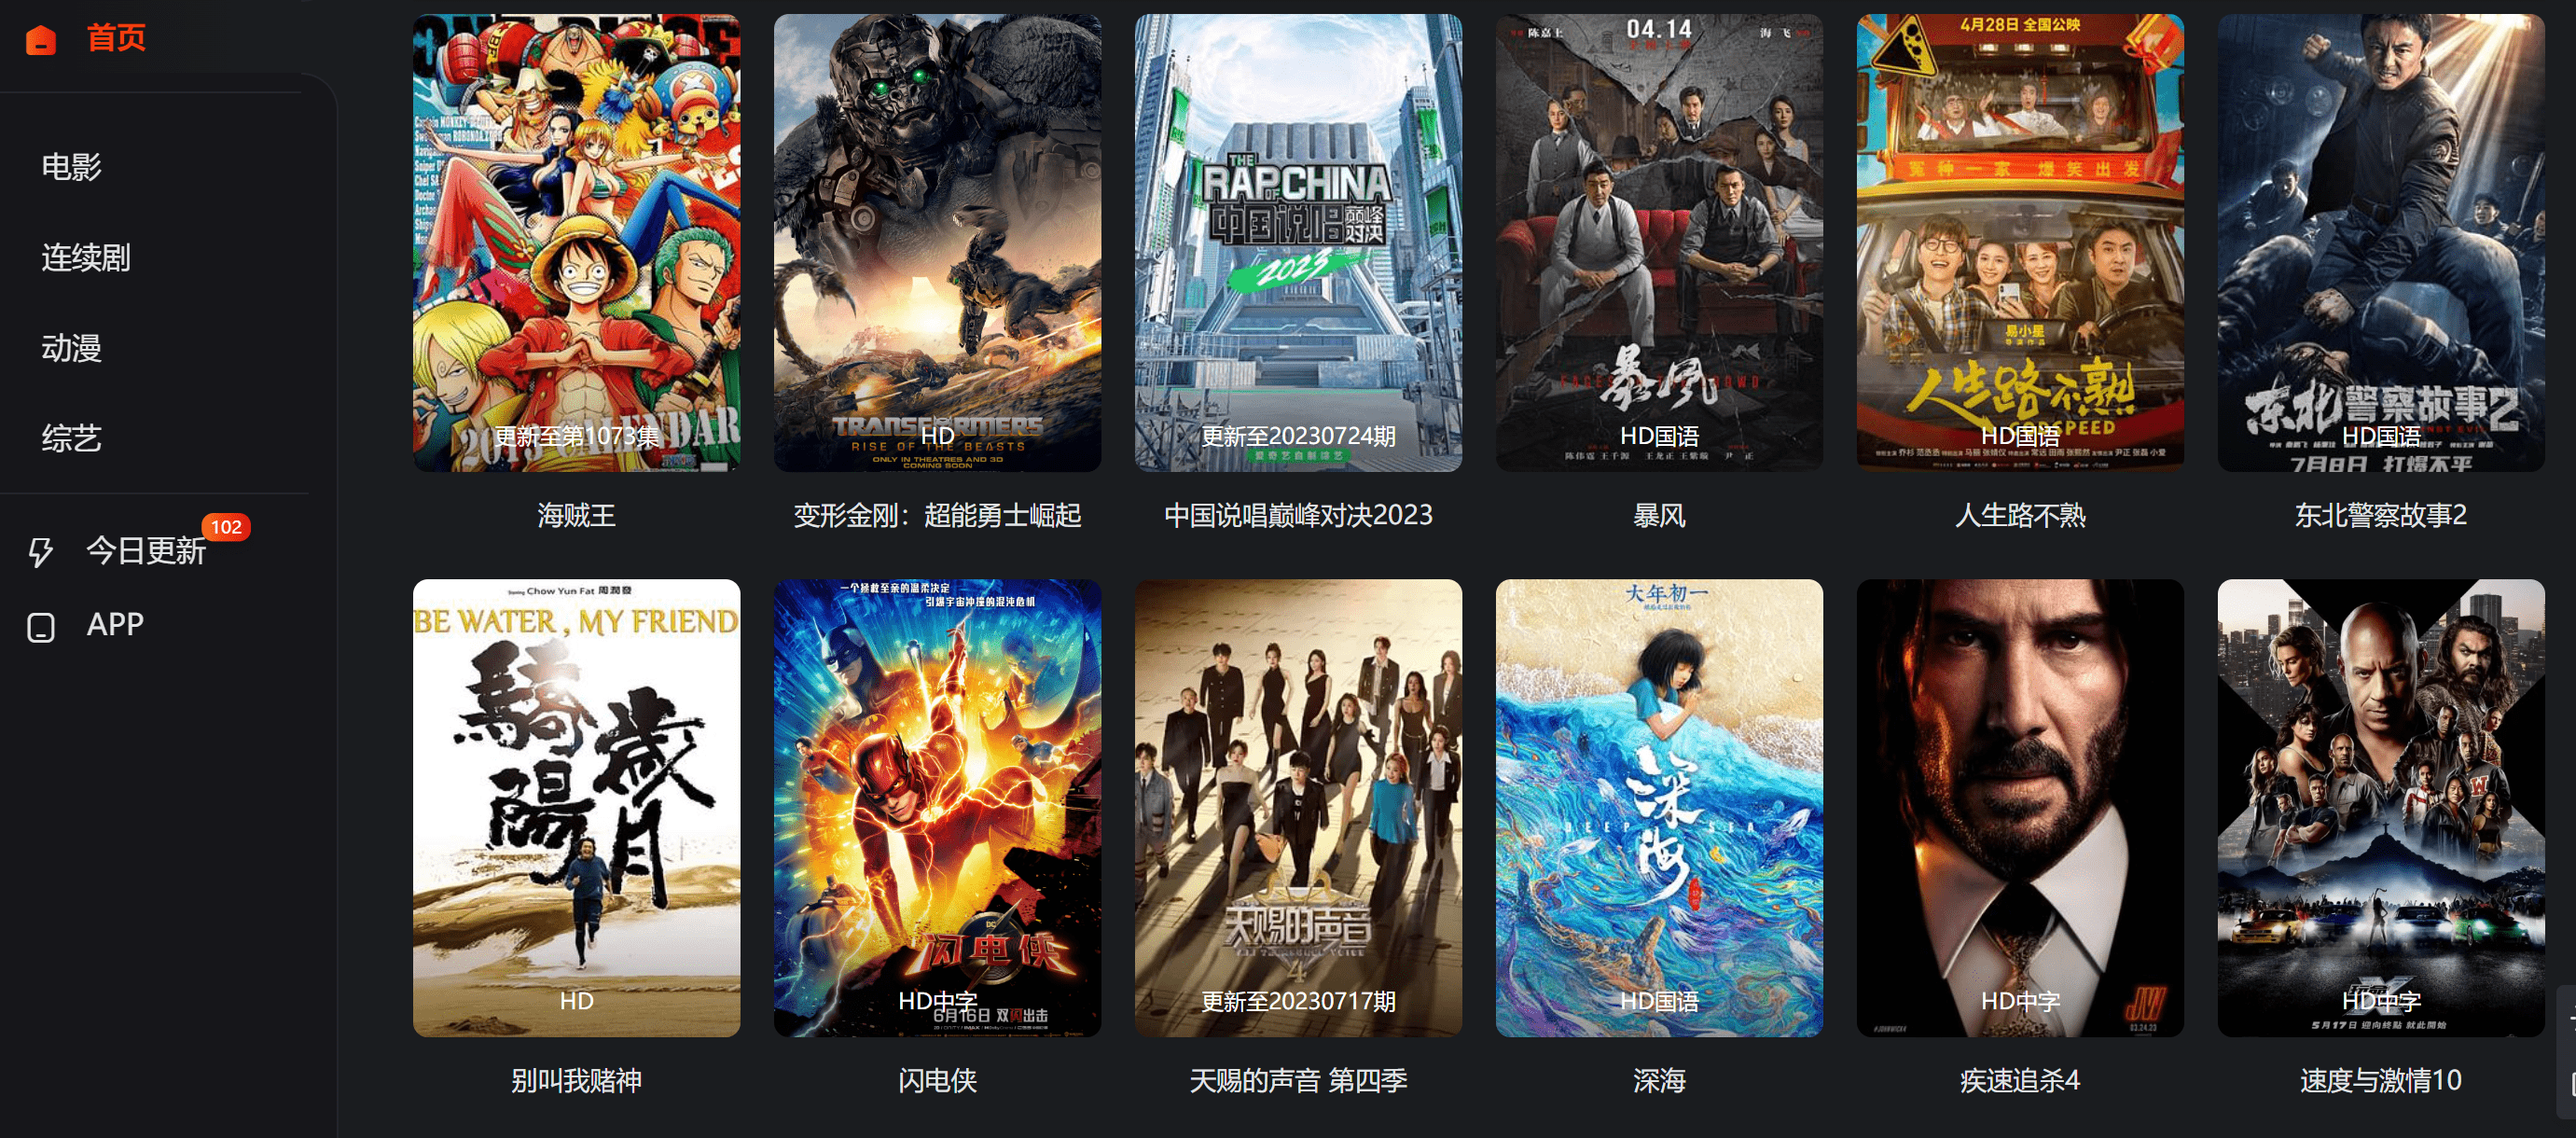 熊猫影院-免费海外华人影院 干净的在线高清影视网站